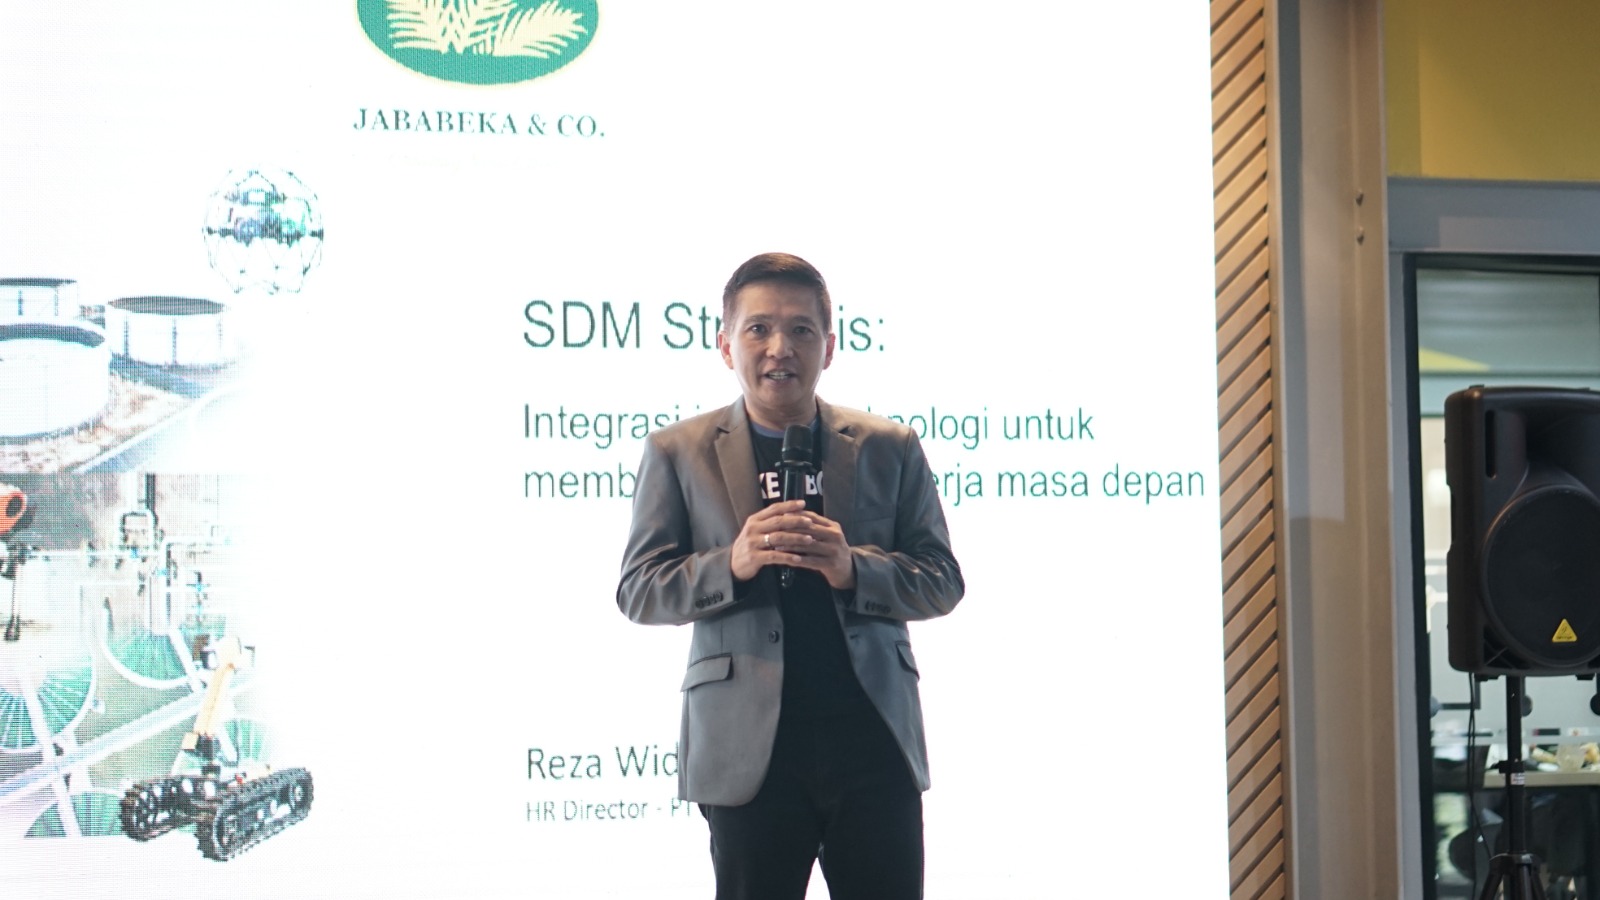 SDM Strategis: Mengintegrasikan Inovasi Teknologi untuk Membangun Tenaga Kerja Masa Depan